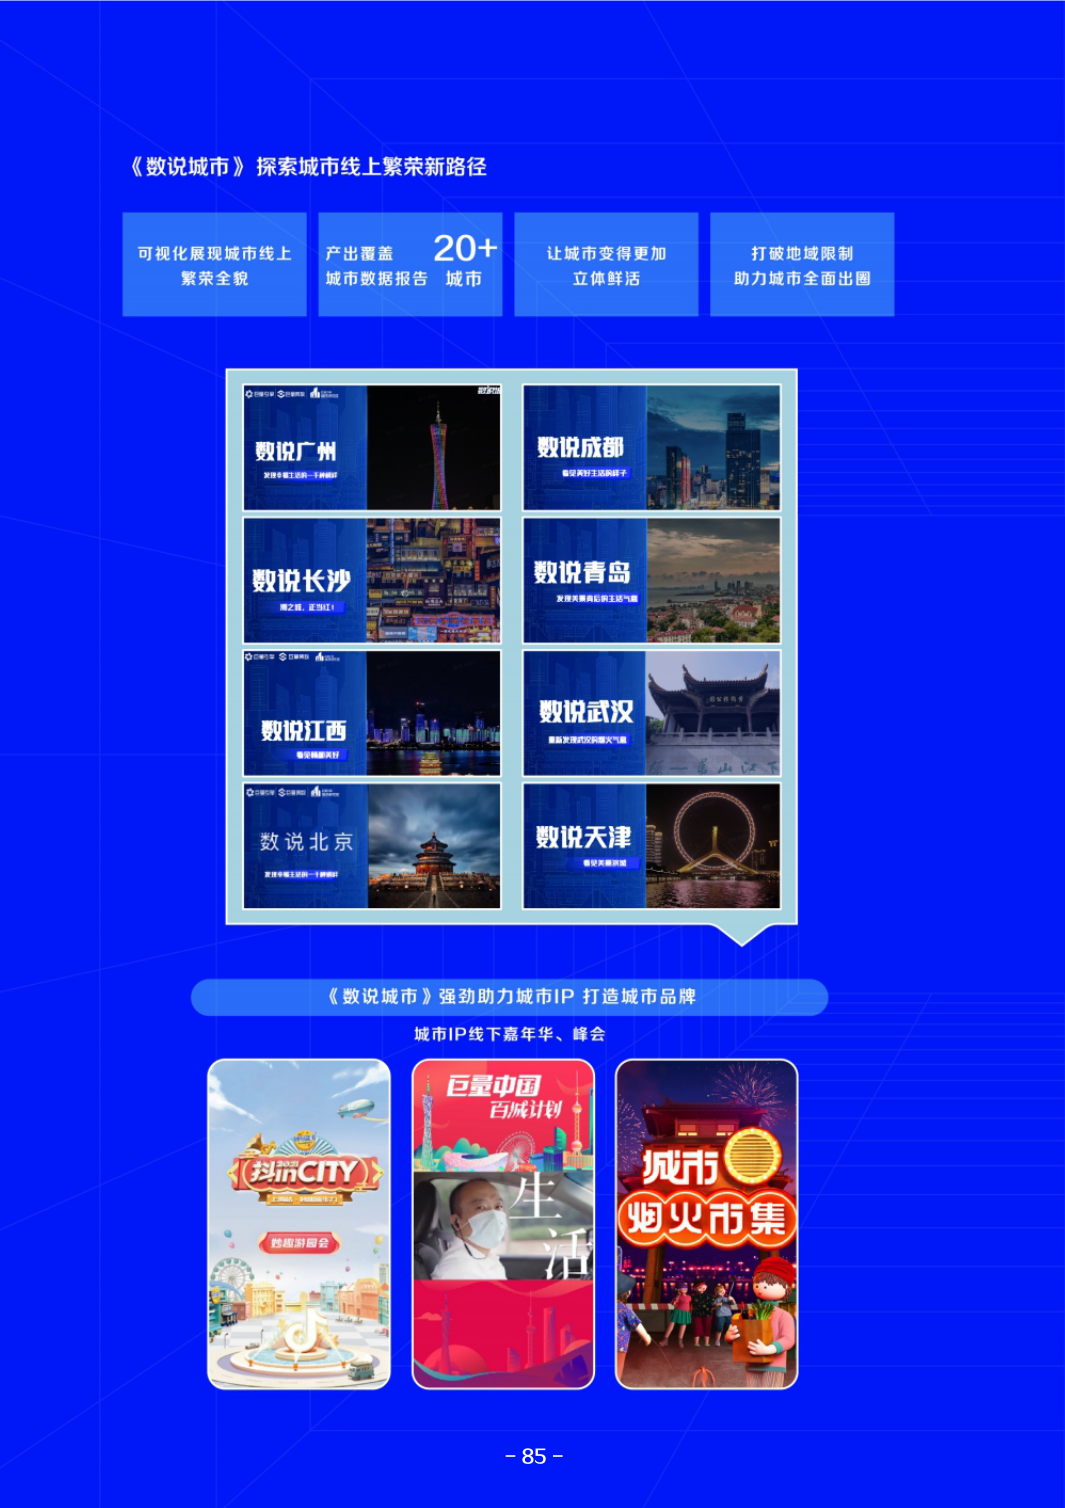 「巨量算数」微信小程序正式上线，随时随地轻松抢热点、找灵感！-中华营销网www.cyingxiao.com中国营销网站第一门户